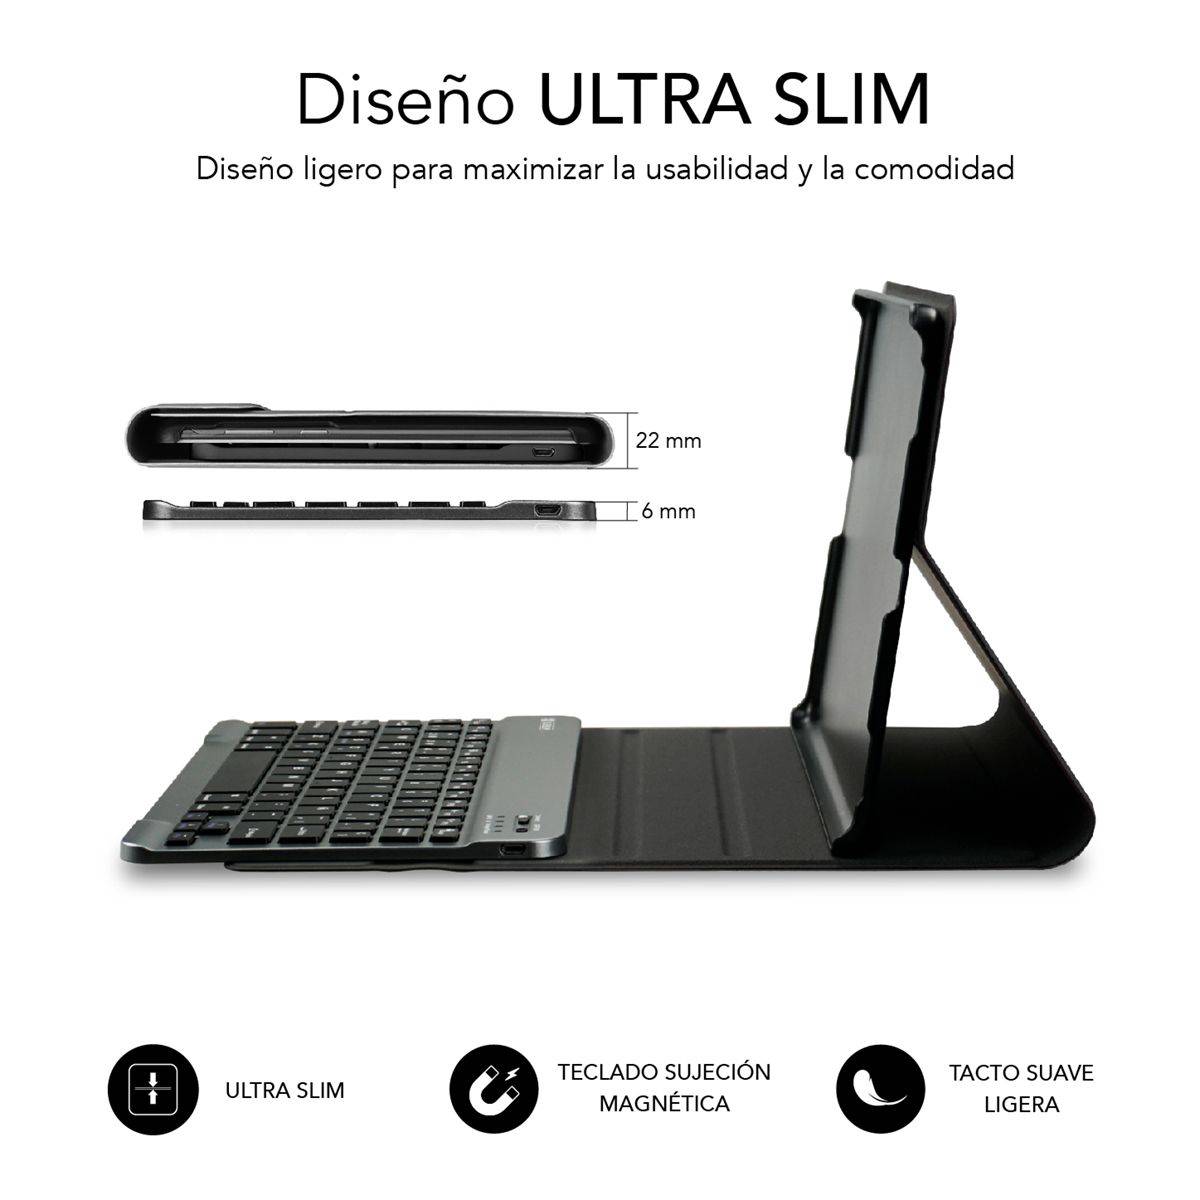 Subblim Keytab Pro Bluetooth funda tablet con teclado compatible con Lenovo  Tab M10 FHD Plus 10,3 TB-X606